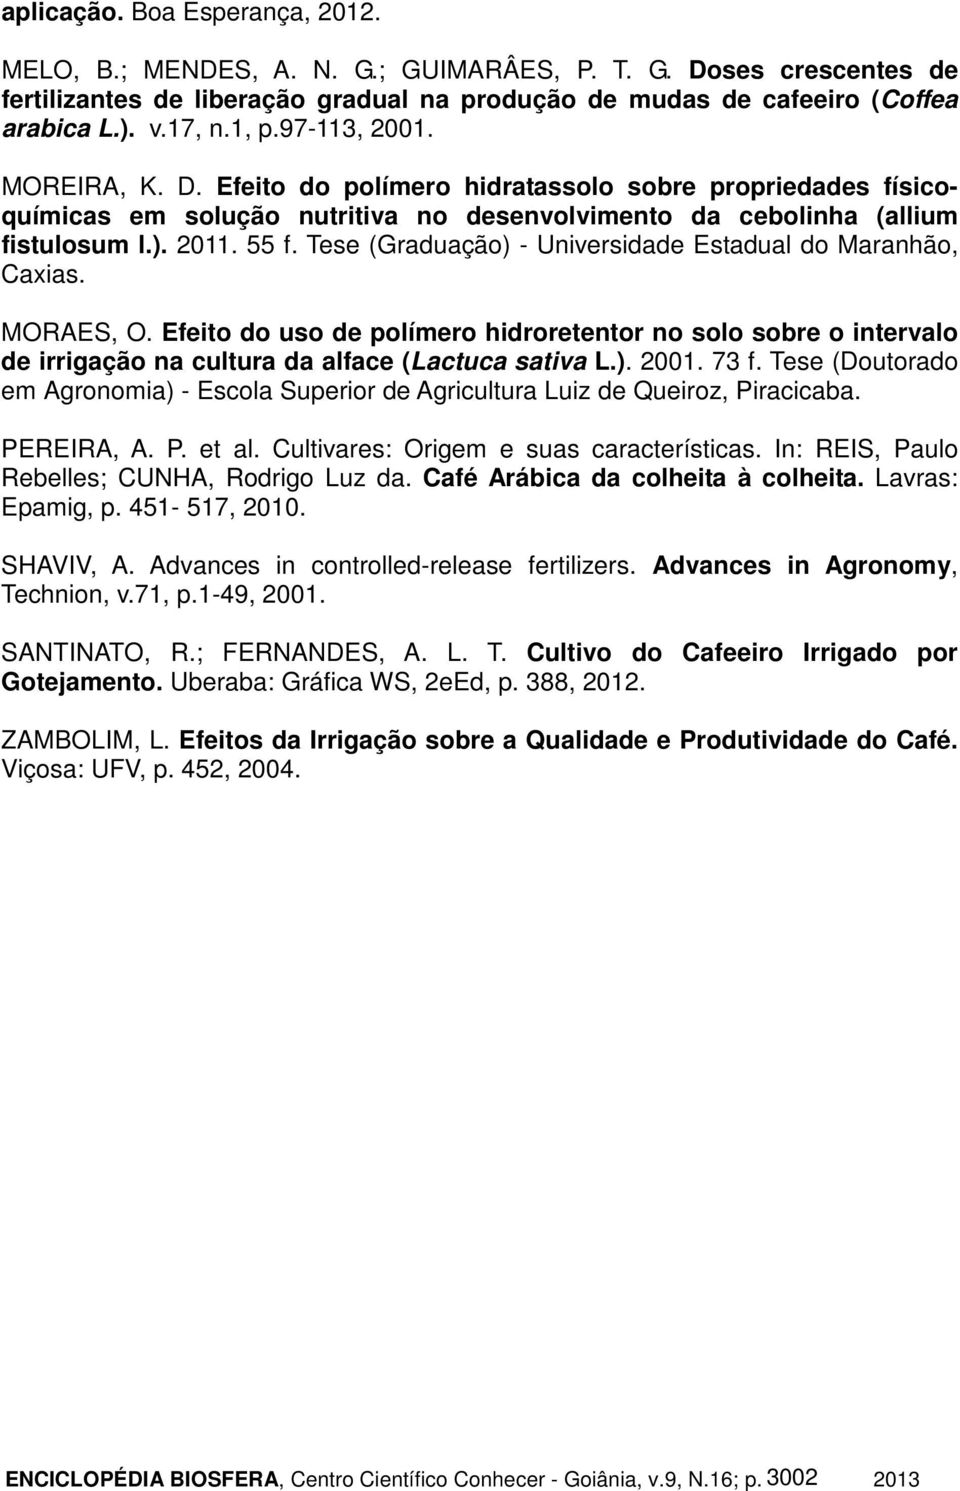 Tese (Graduação) - Universidade Estadual do Maranhão, Caxias. MORAES, O. Efeito do uso de polímero hidroretentor no solo sobre o intervalo de irrigação na cultura da alface (Lactuca sativa L.). 2001.